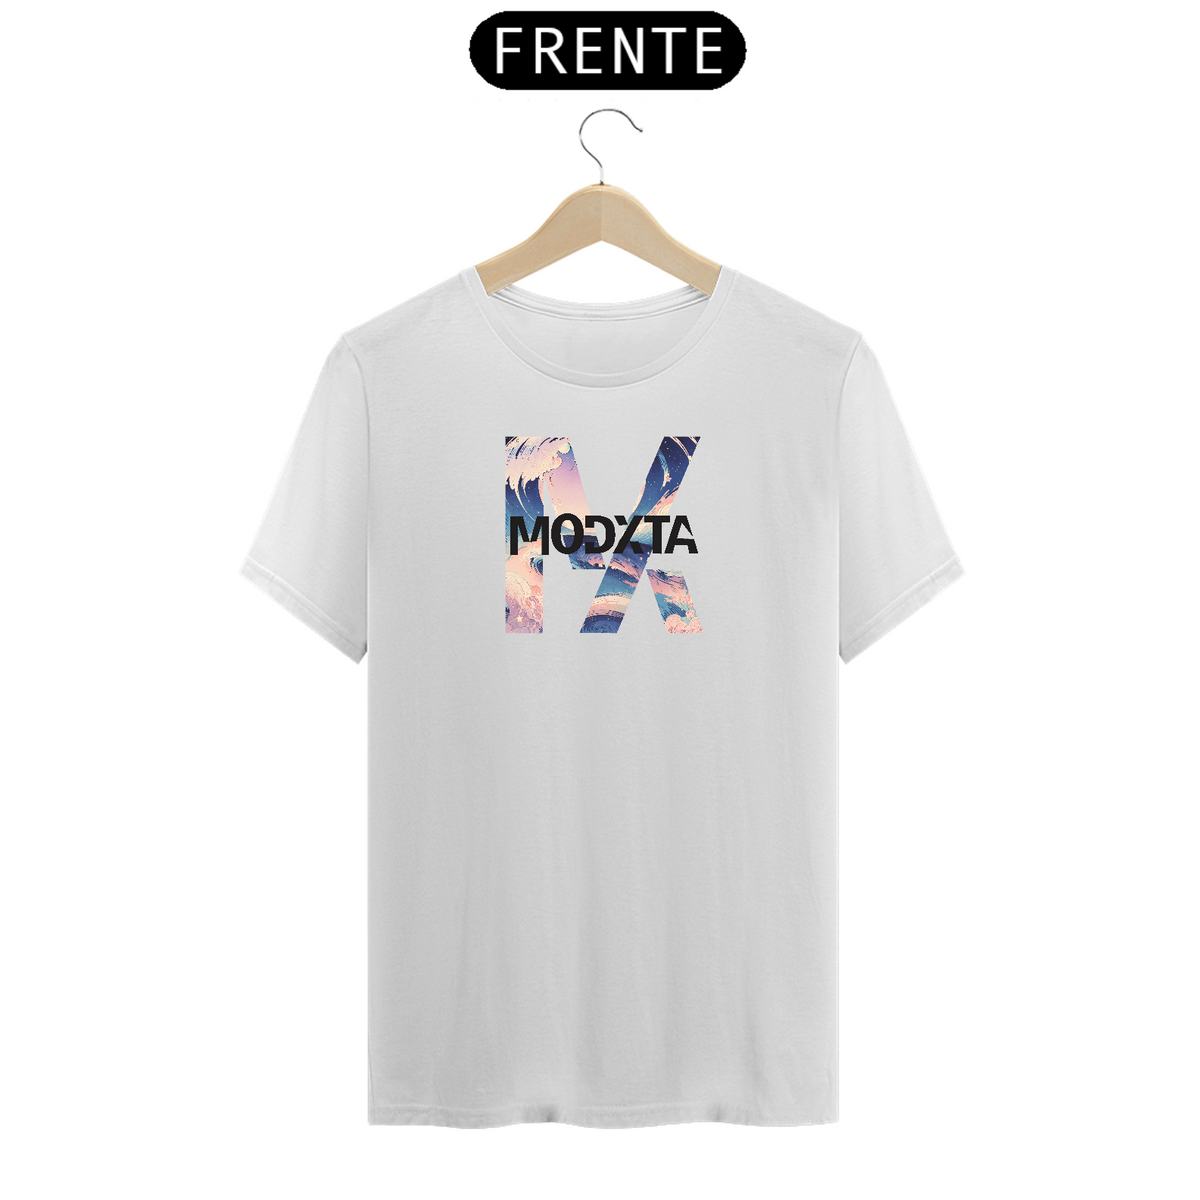 Nome do produto: Camisetas T-Shirt Premium com Estampas Artísticas colorida MODXTA Branca